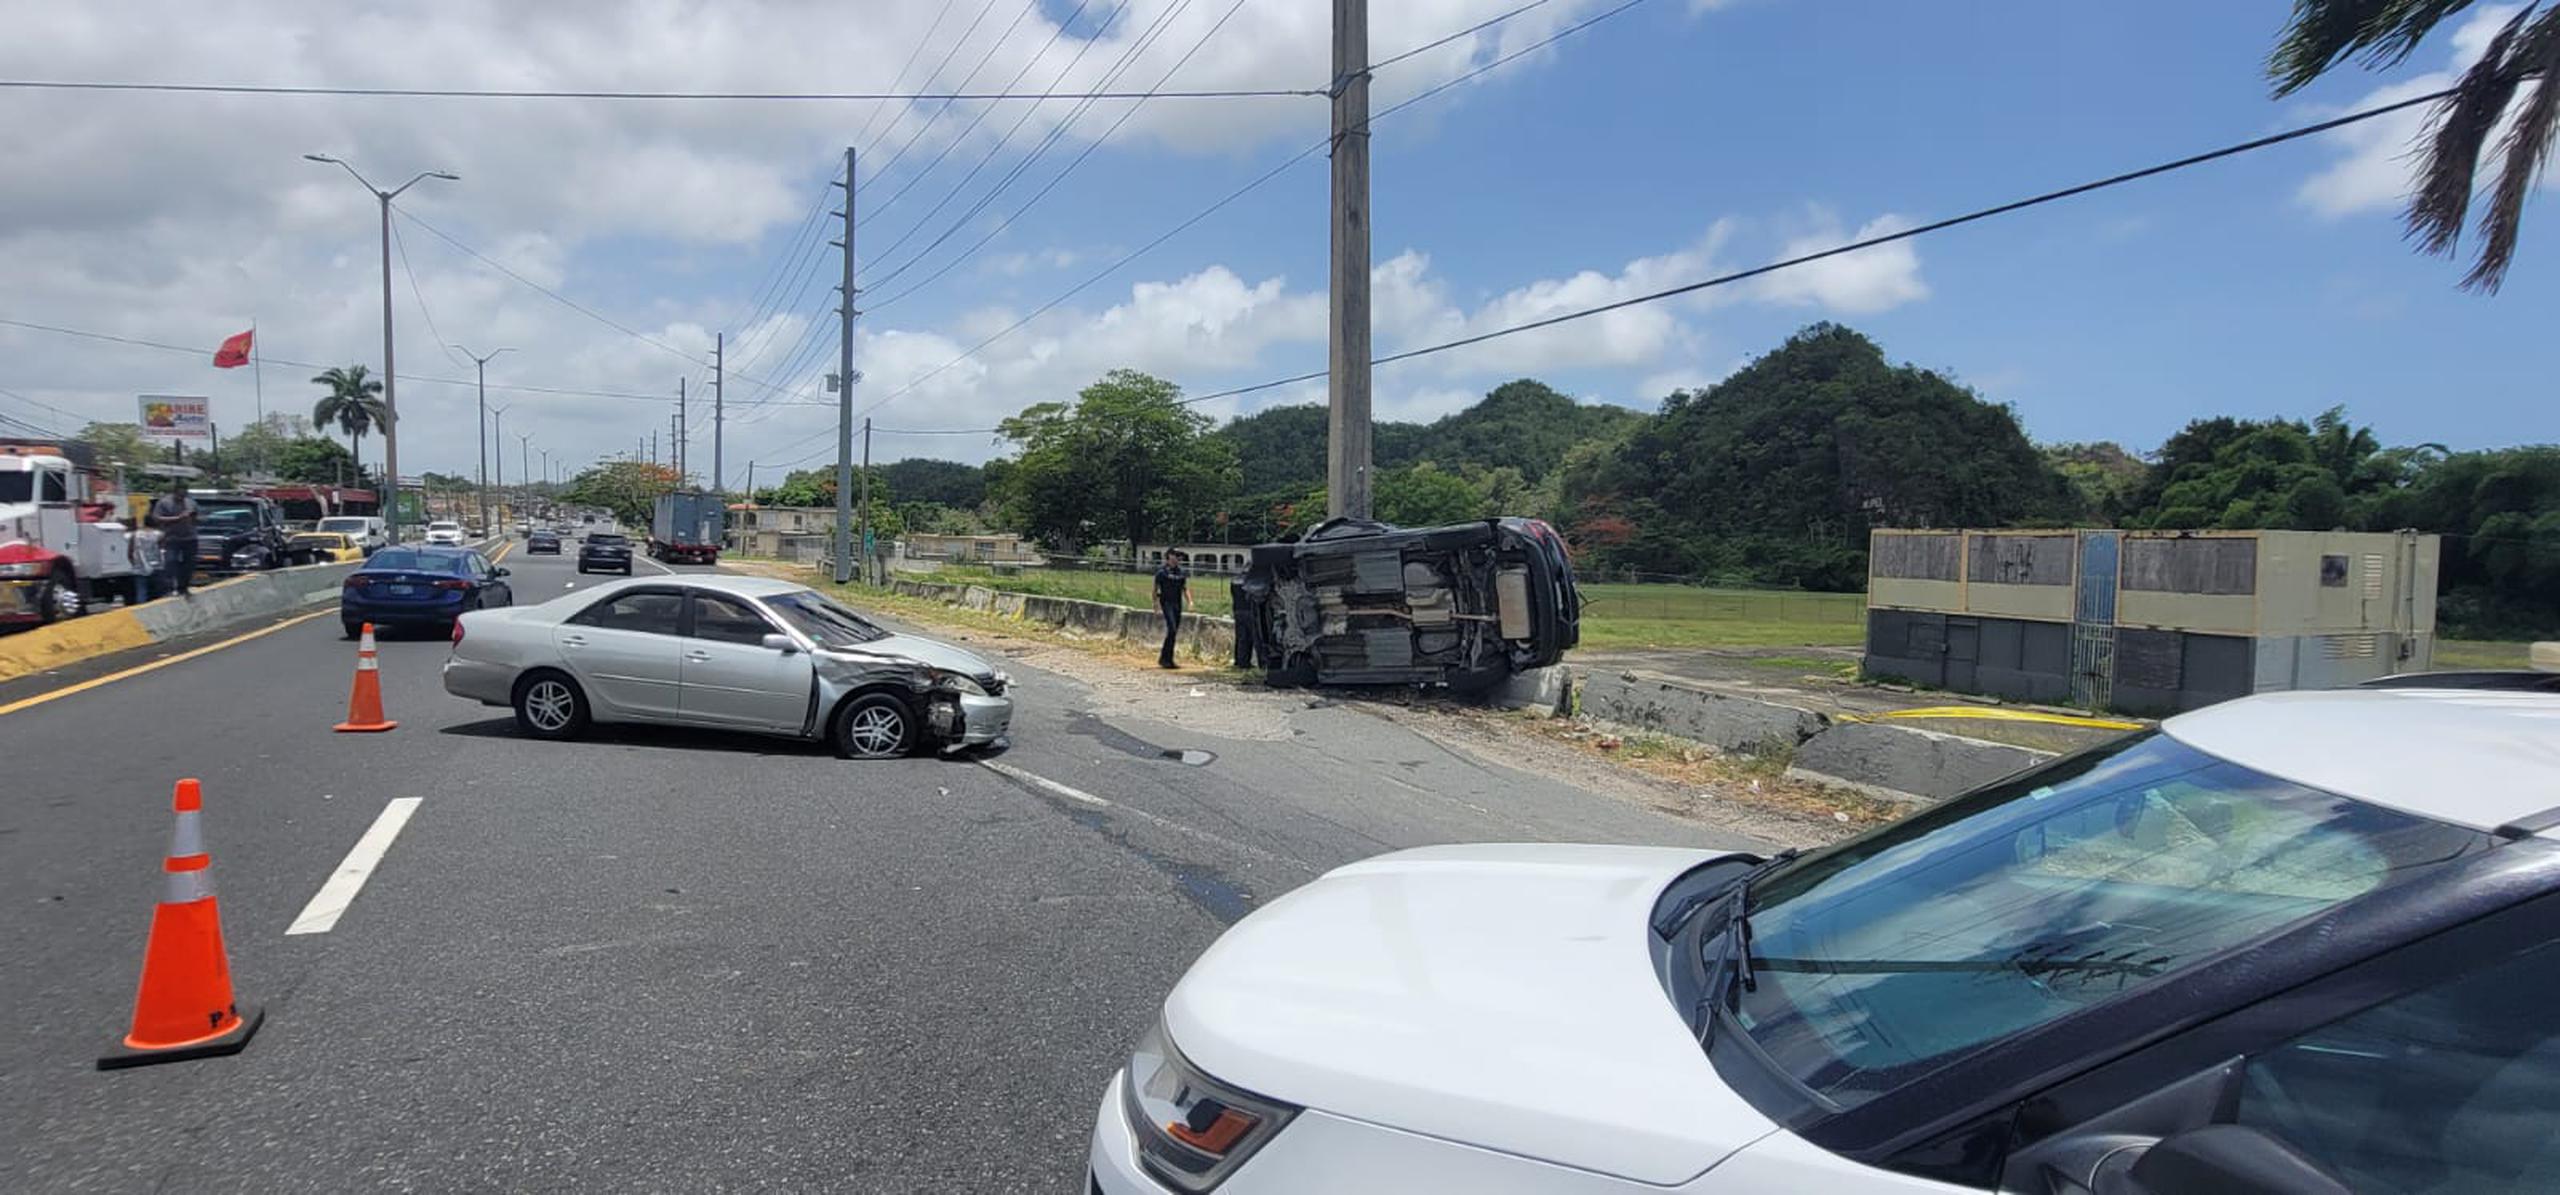 Tres adultos y dos menores resultaron heridos en un accidente de tránsito reportado en el kilómetro 26.2 de la carretera PR-2 en el barrio Espinosa, en Dorado.